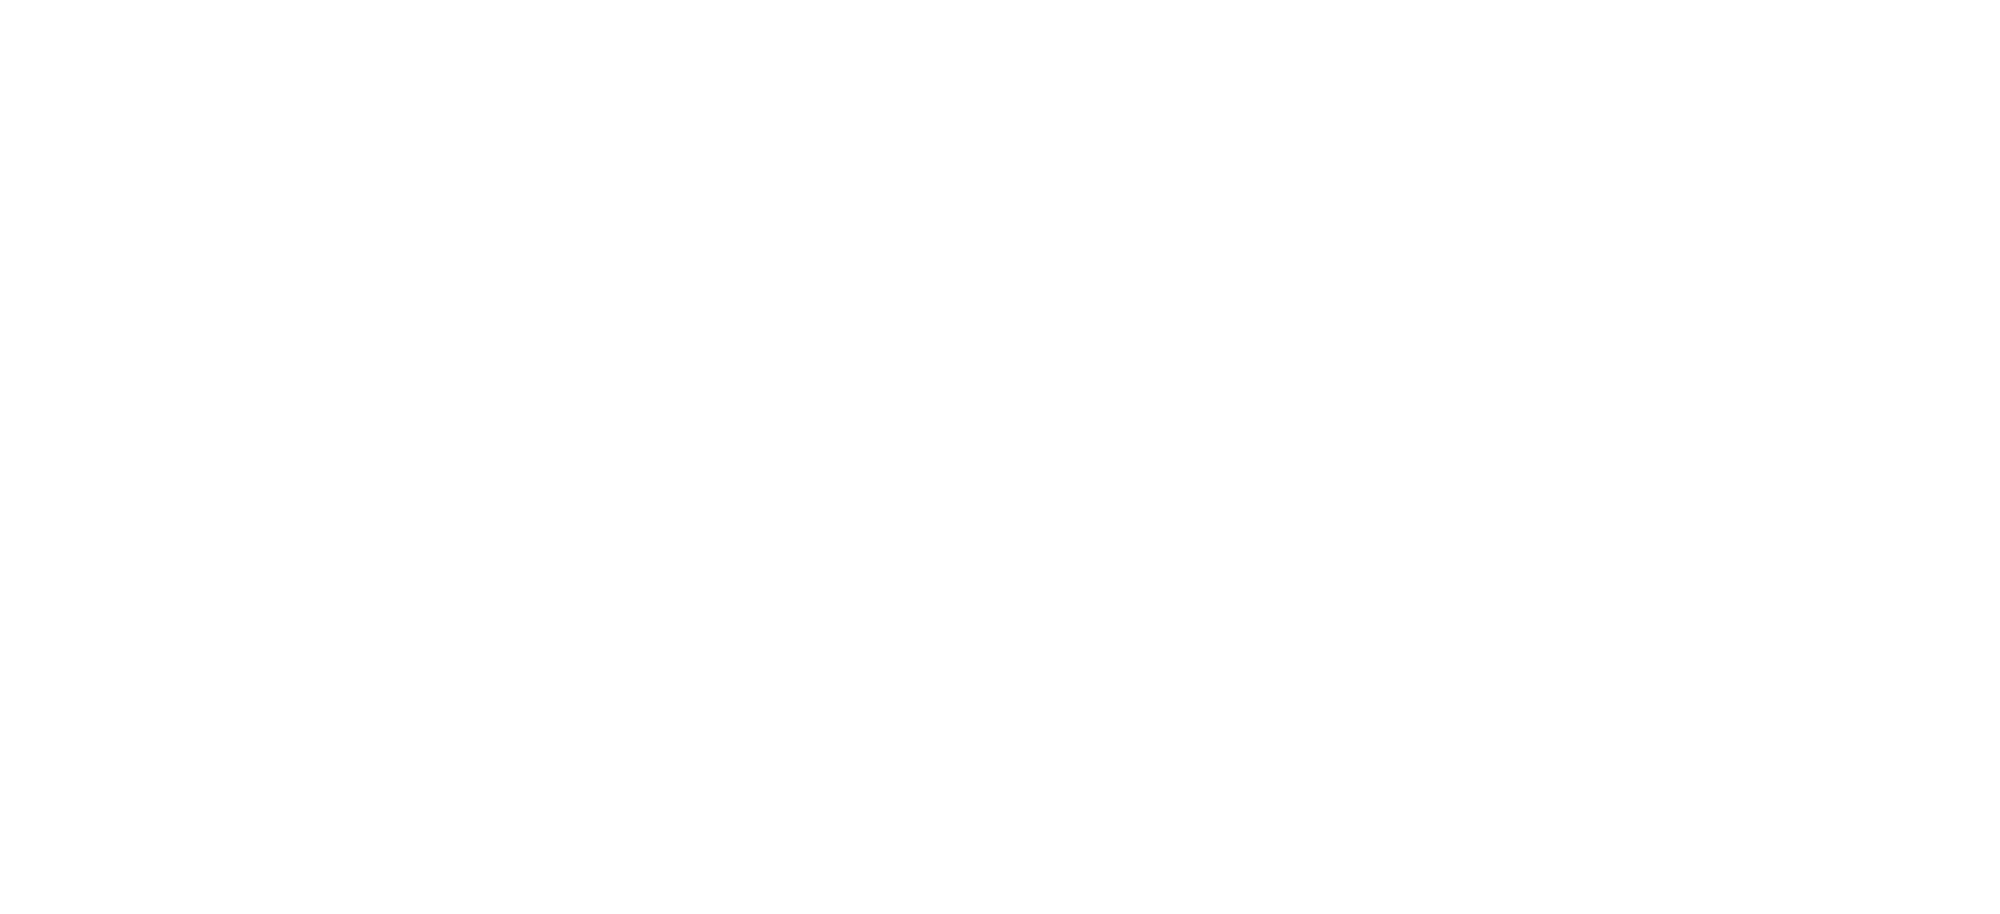 Leo Rover 1.8 software diagram